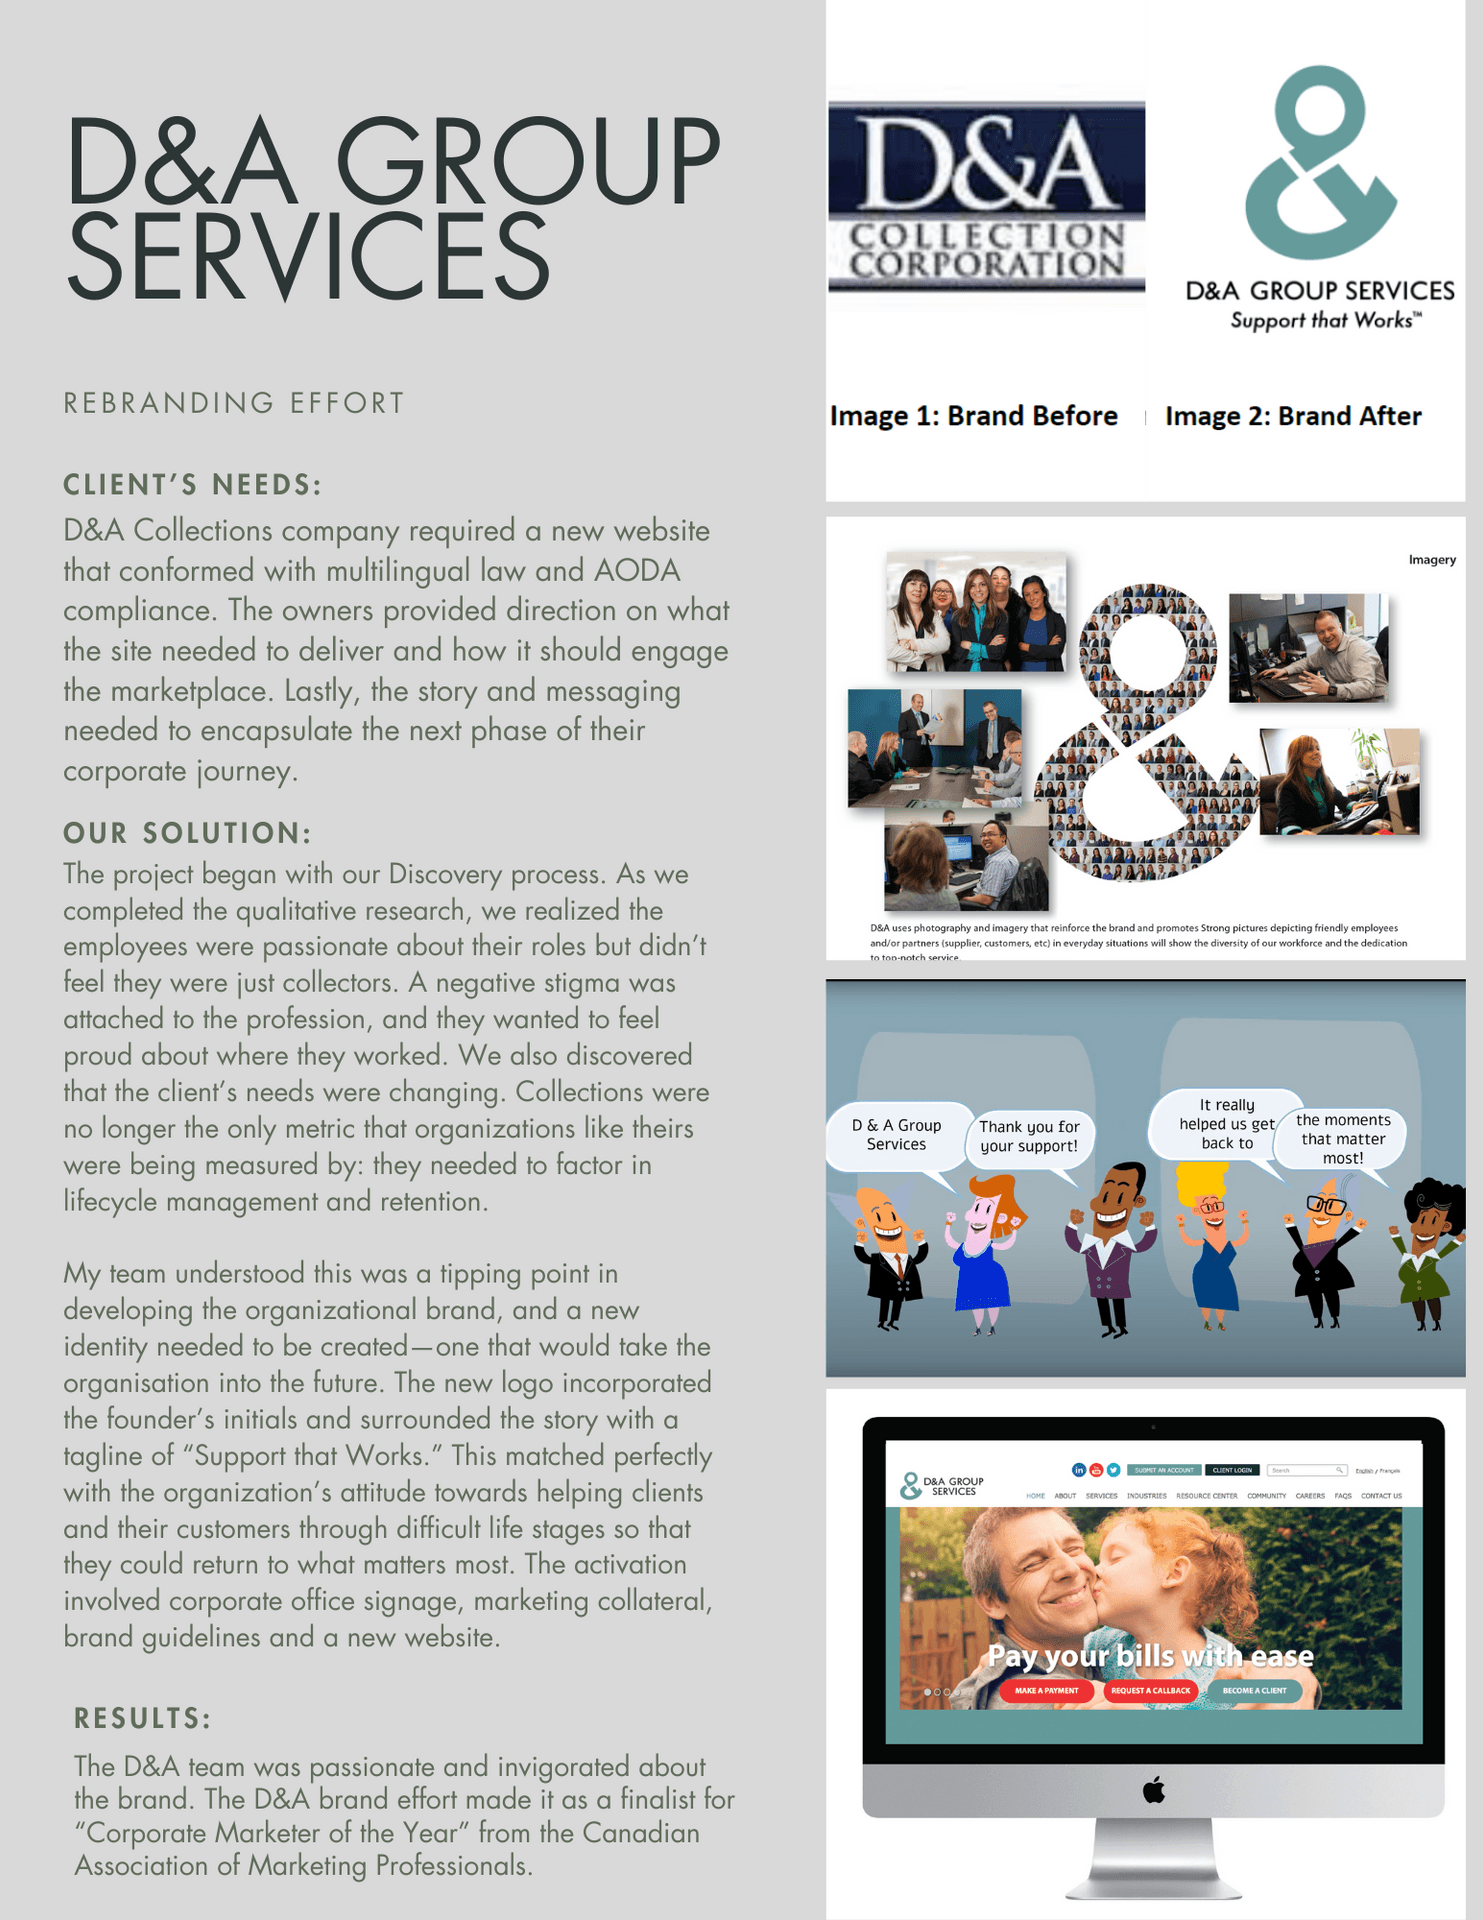 D&A Group Services